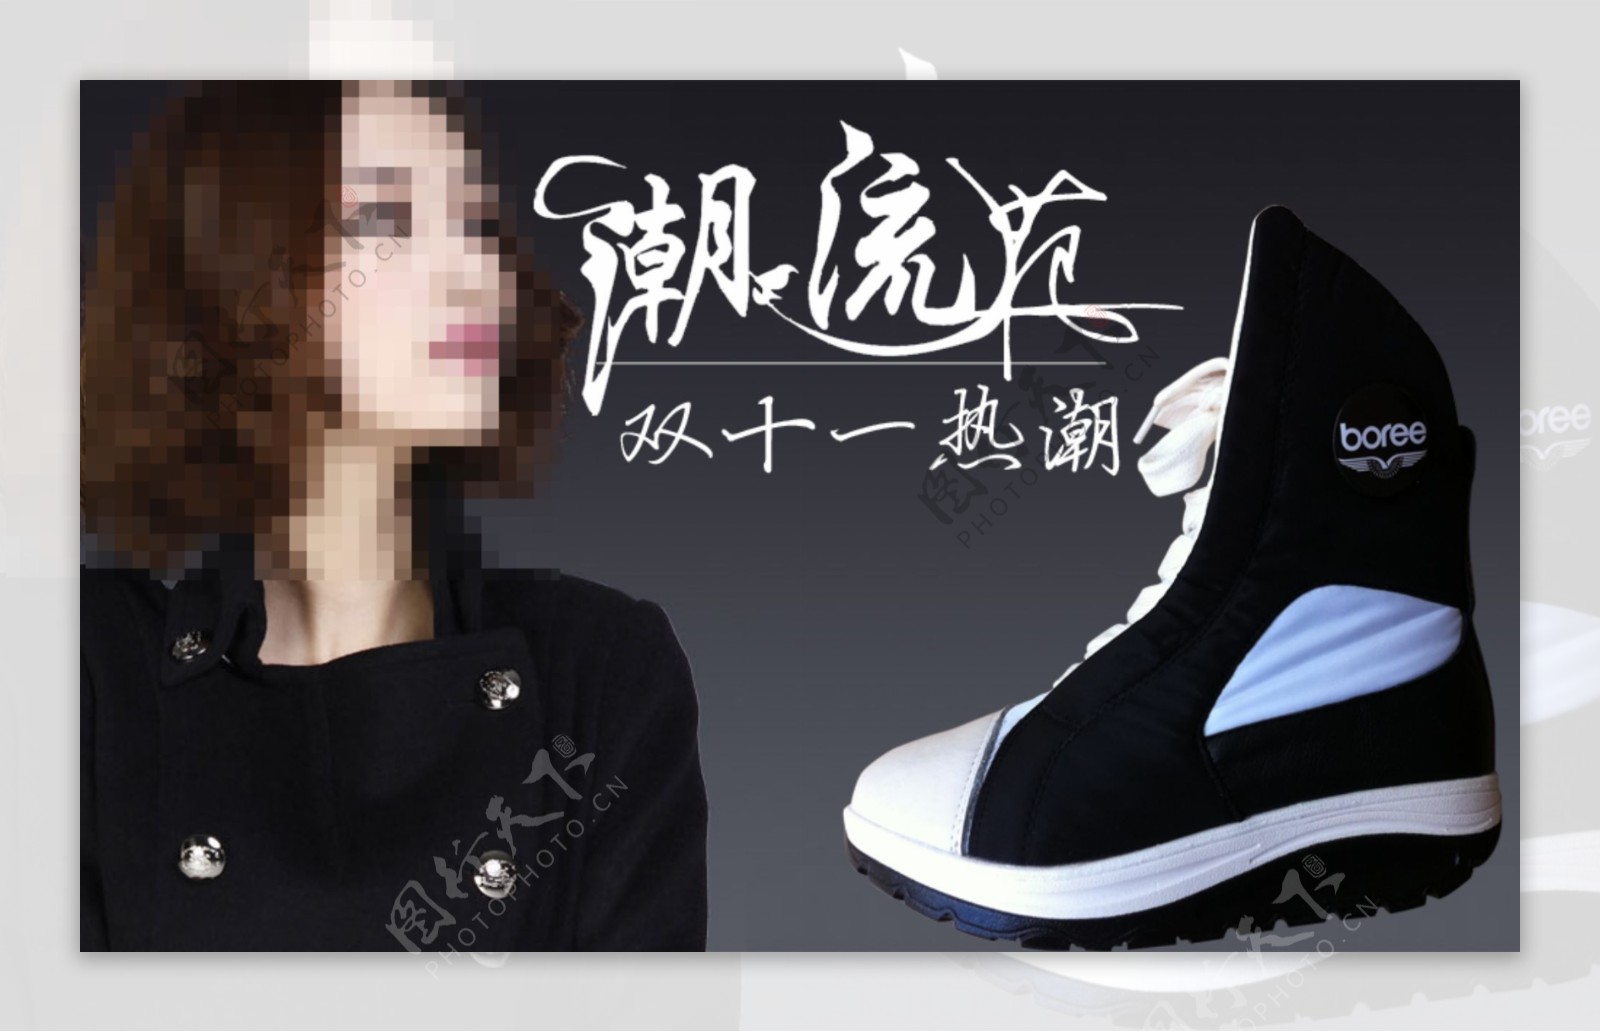 淘宝潮流女靴宣传图图片